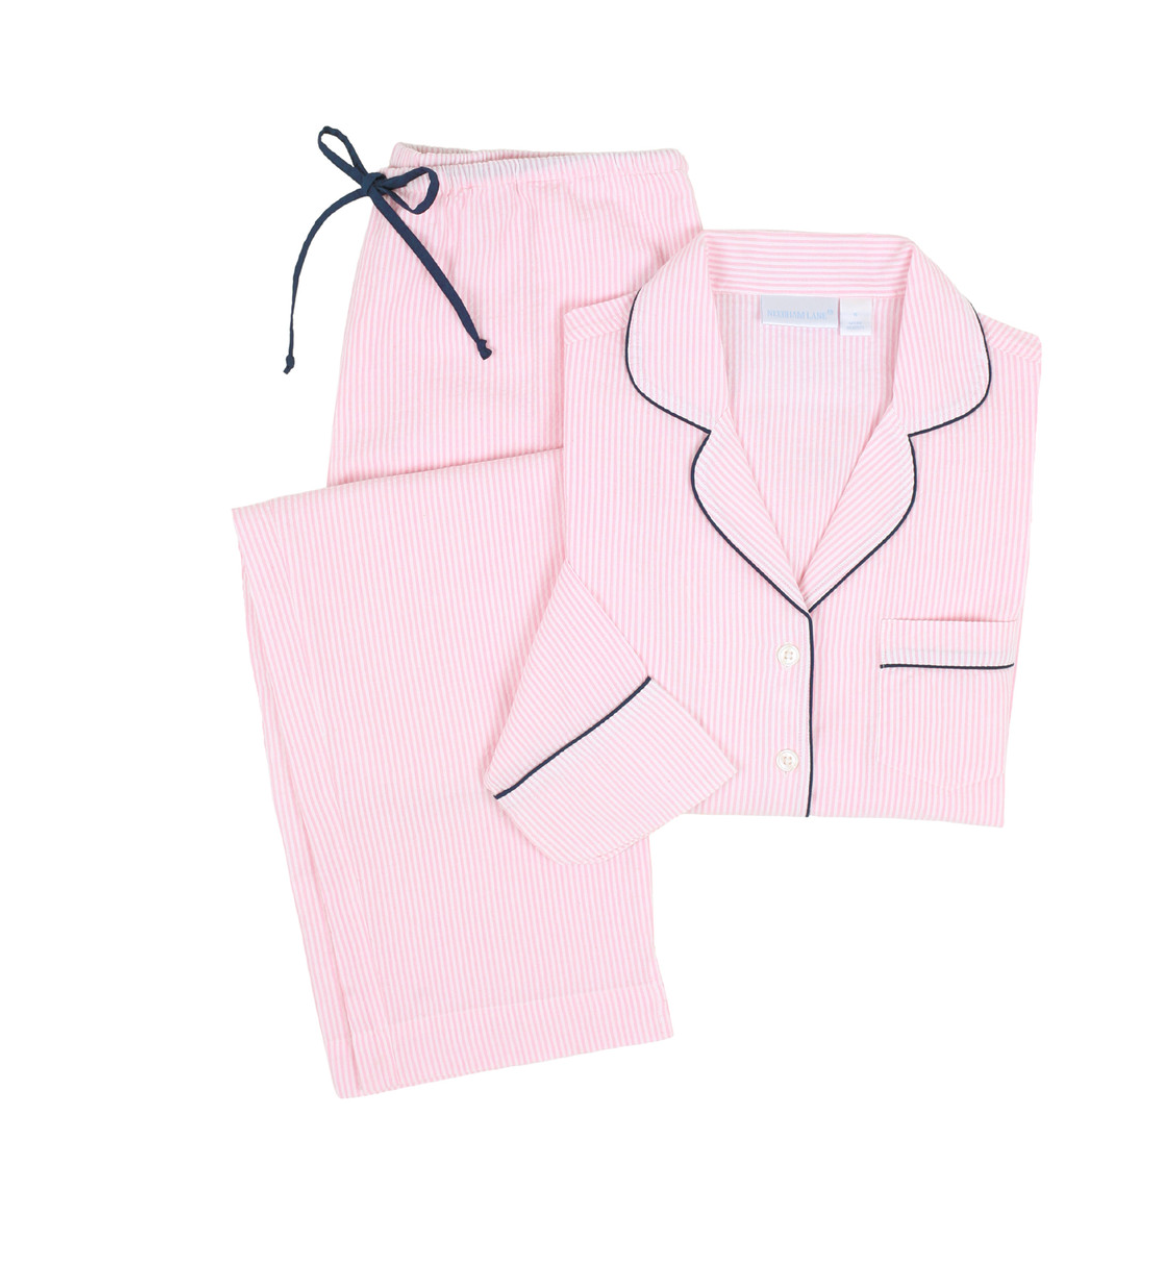 Pink and Navy Seersucker Long Pajama set